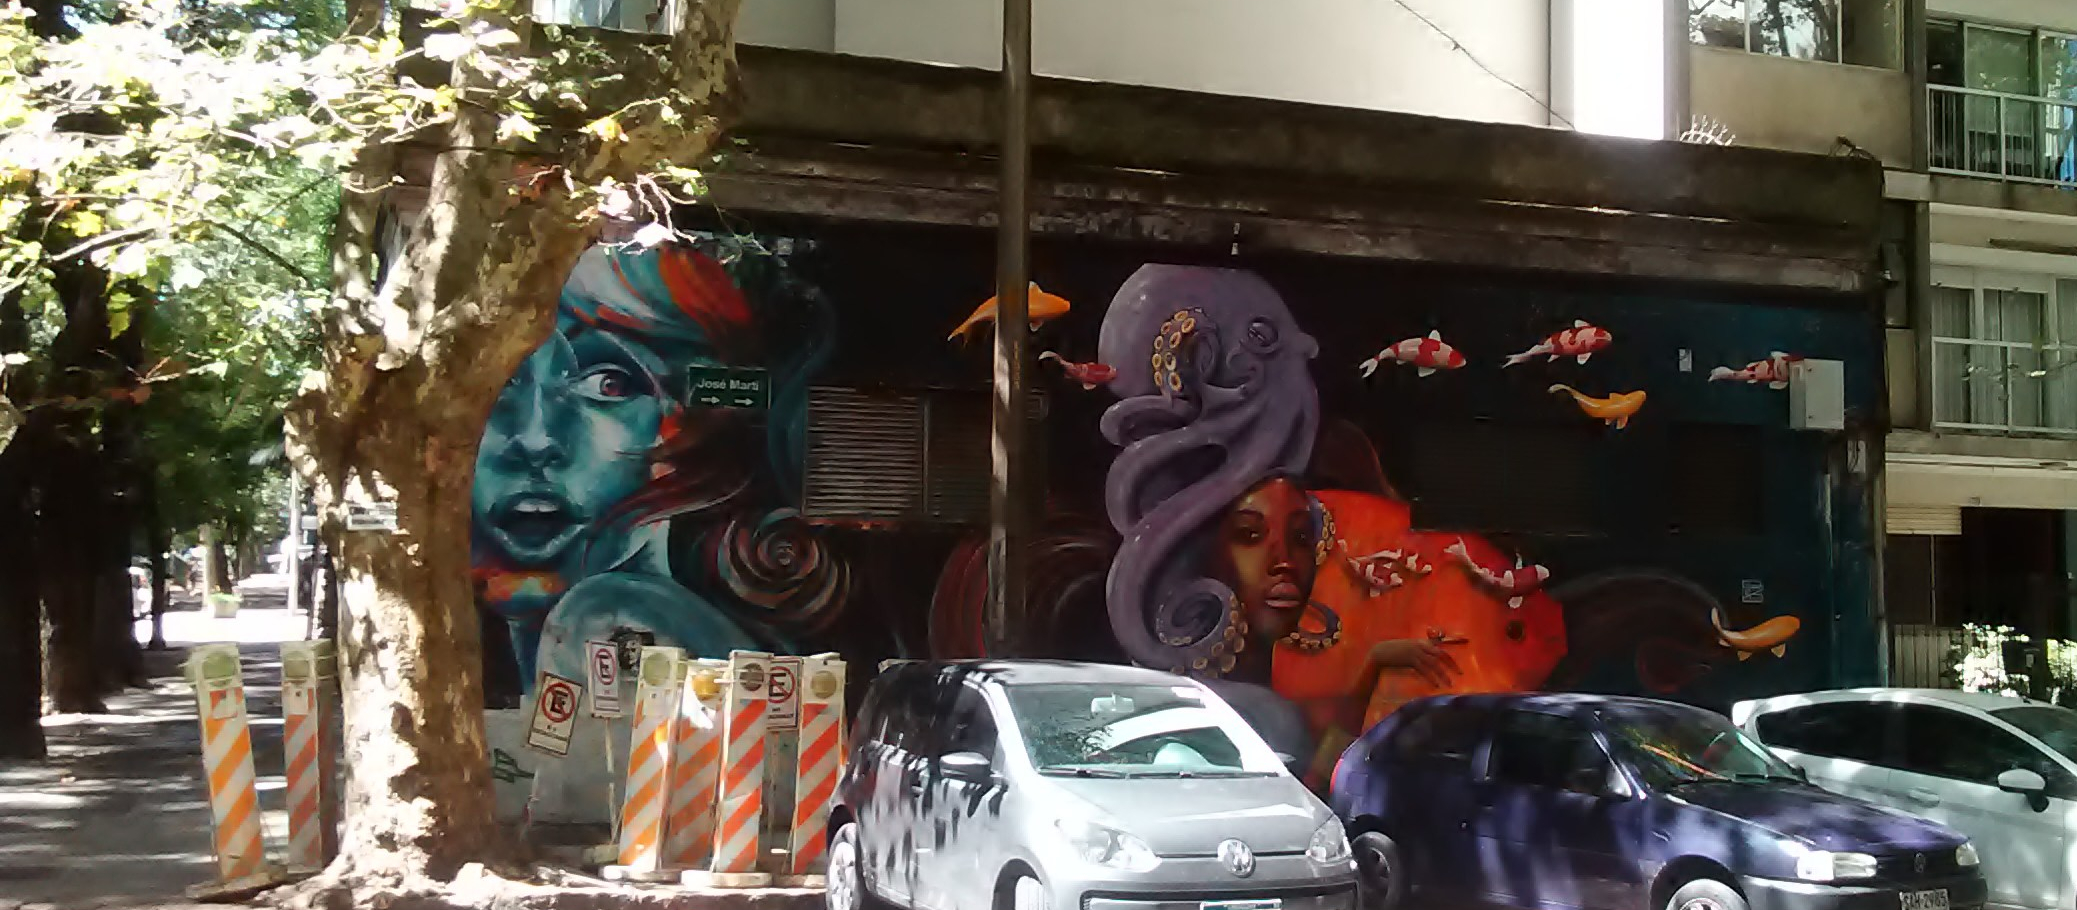 Grafiti en Av. José Martí y Calle Berro